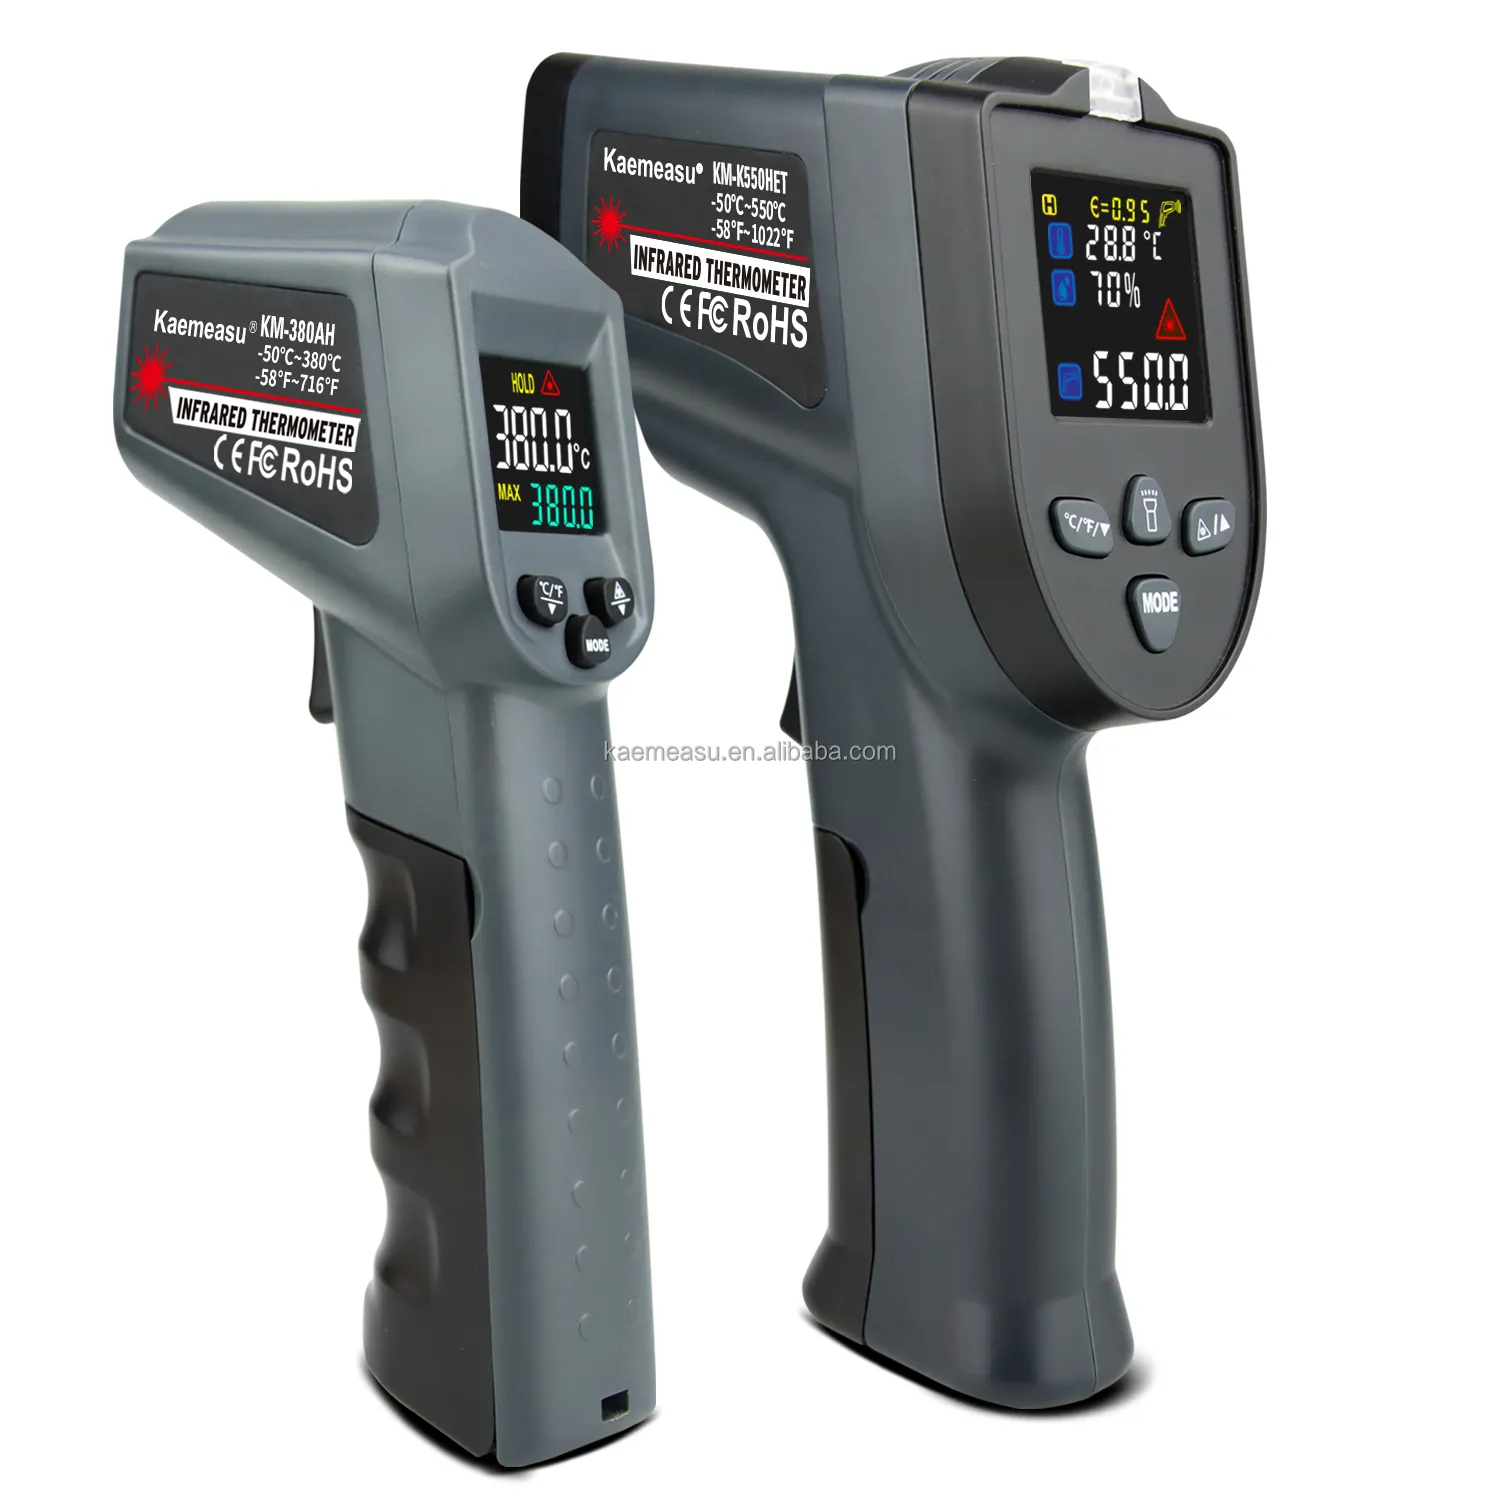 Termometer inframerah, pengukur suhu Digital senapan Laser ganda untuk industri